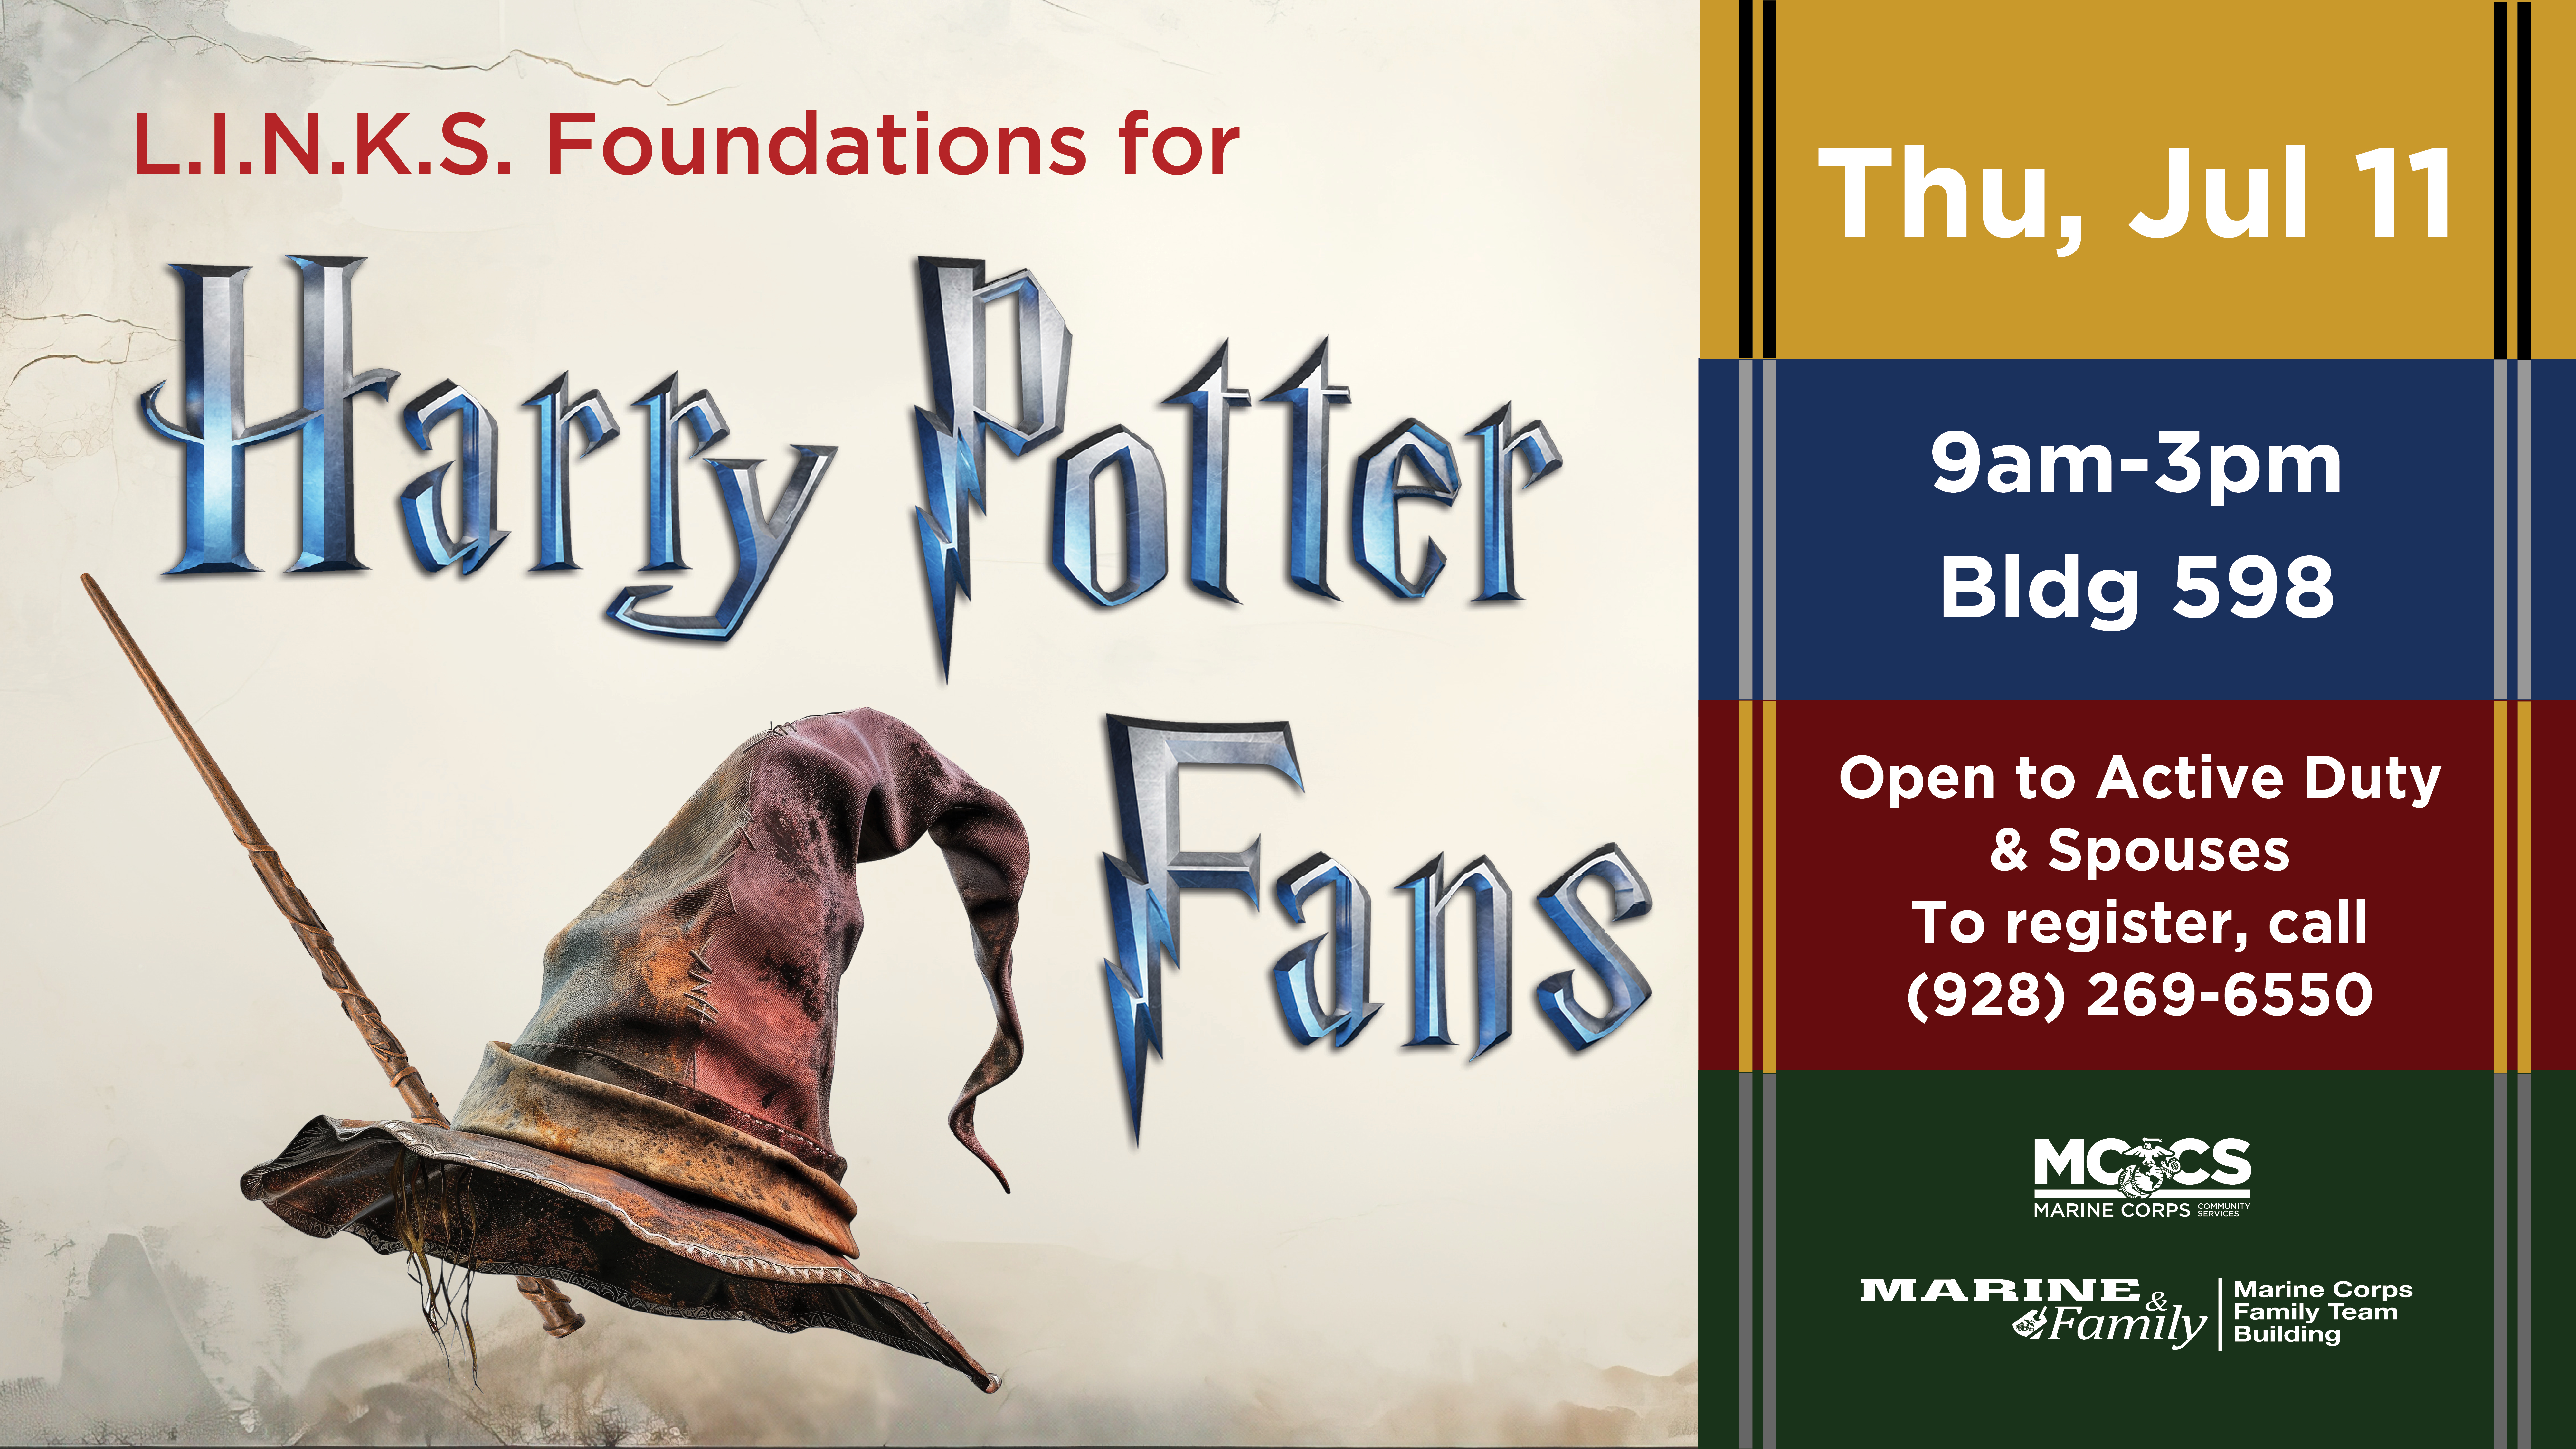 L.I.N.K.S. Foundations for Harry Potter Fans